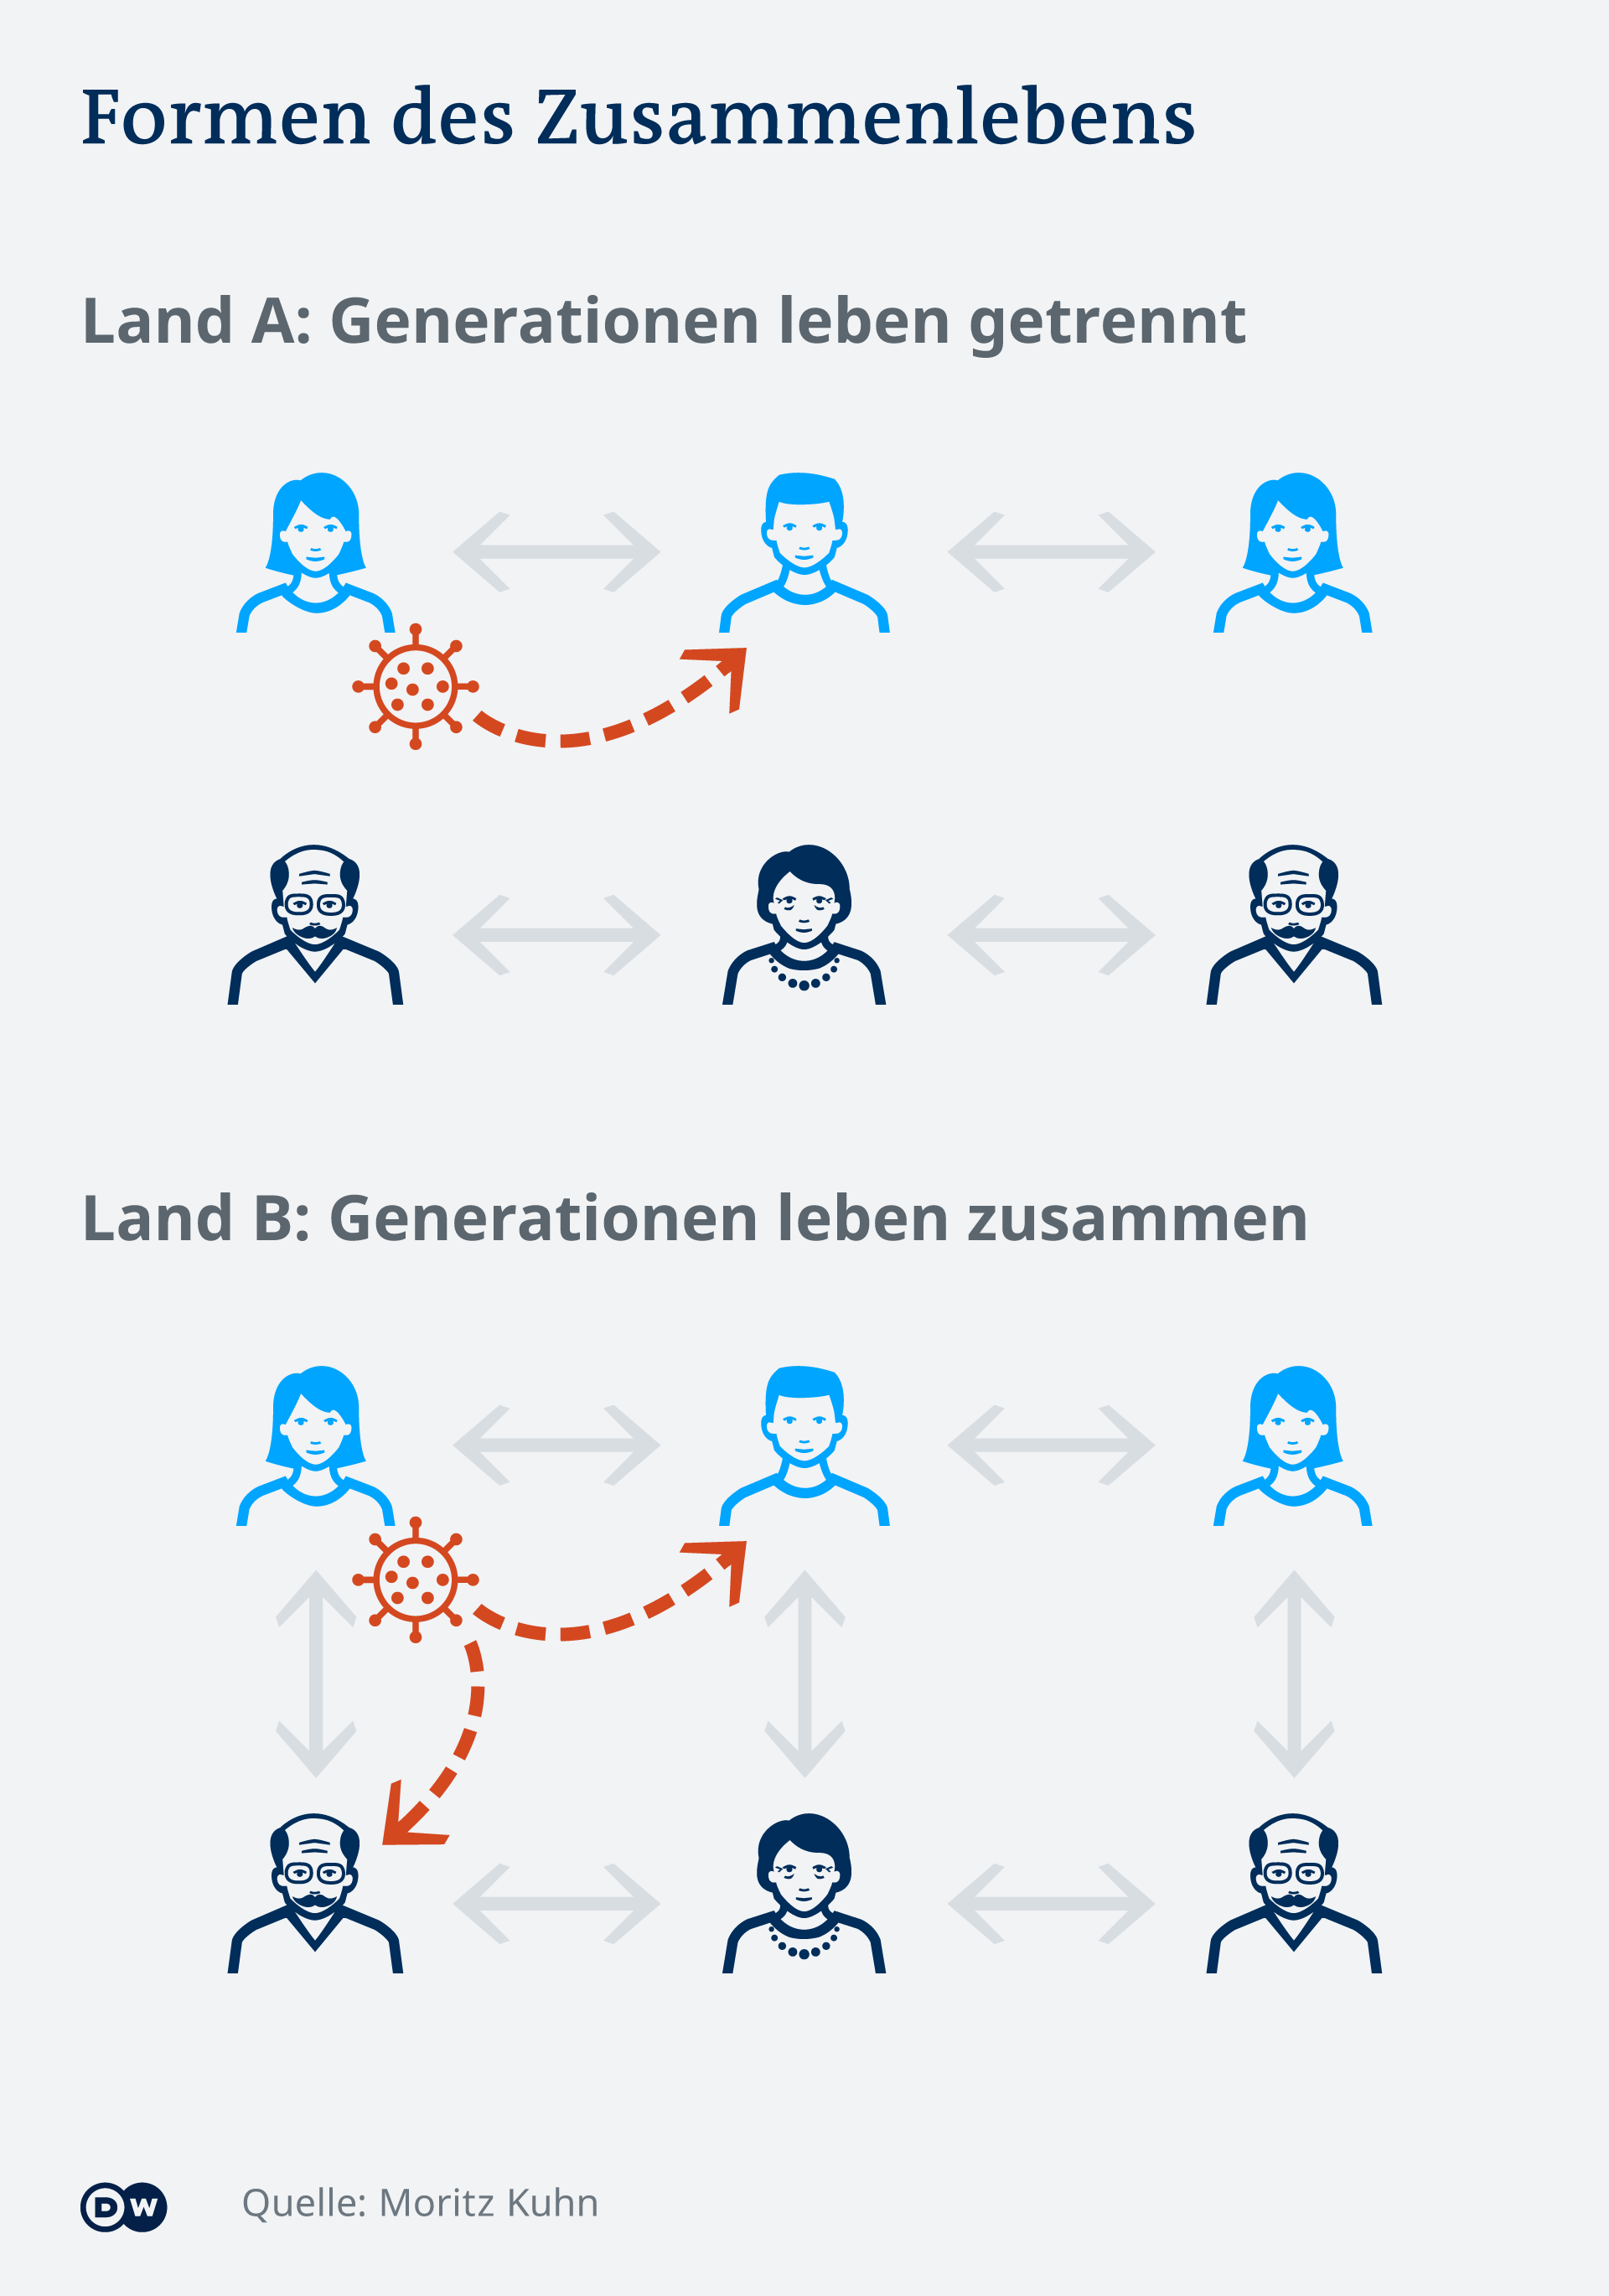 Infografik: Corona und Zusammenleben von Generationen